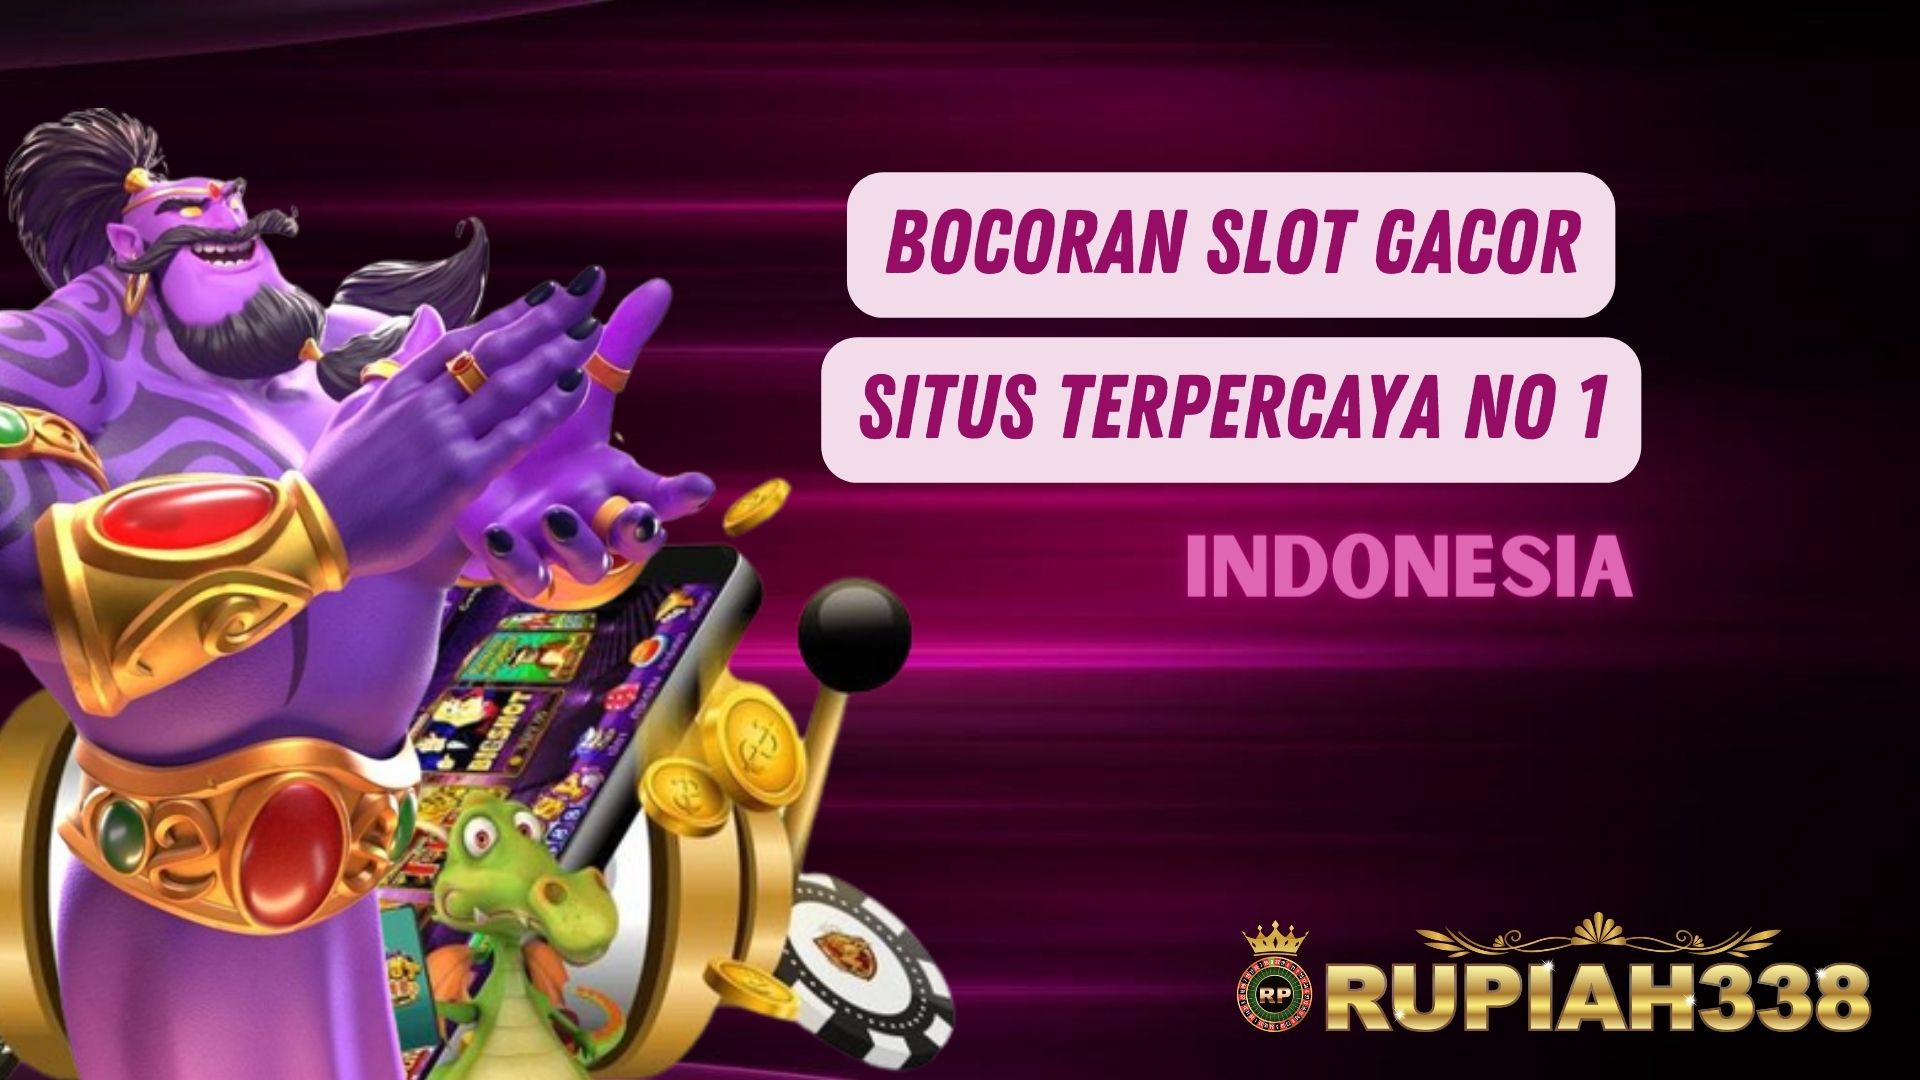 SLOT GACOR NO 1 INDONESIA